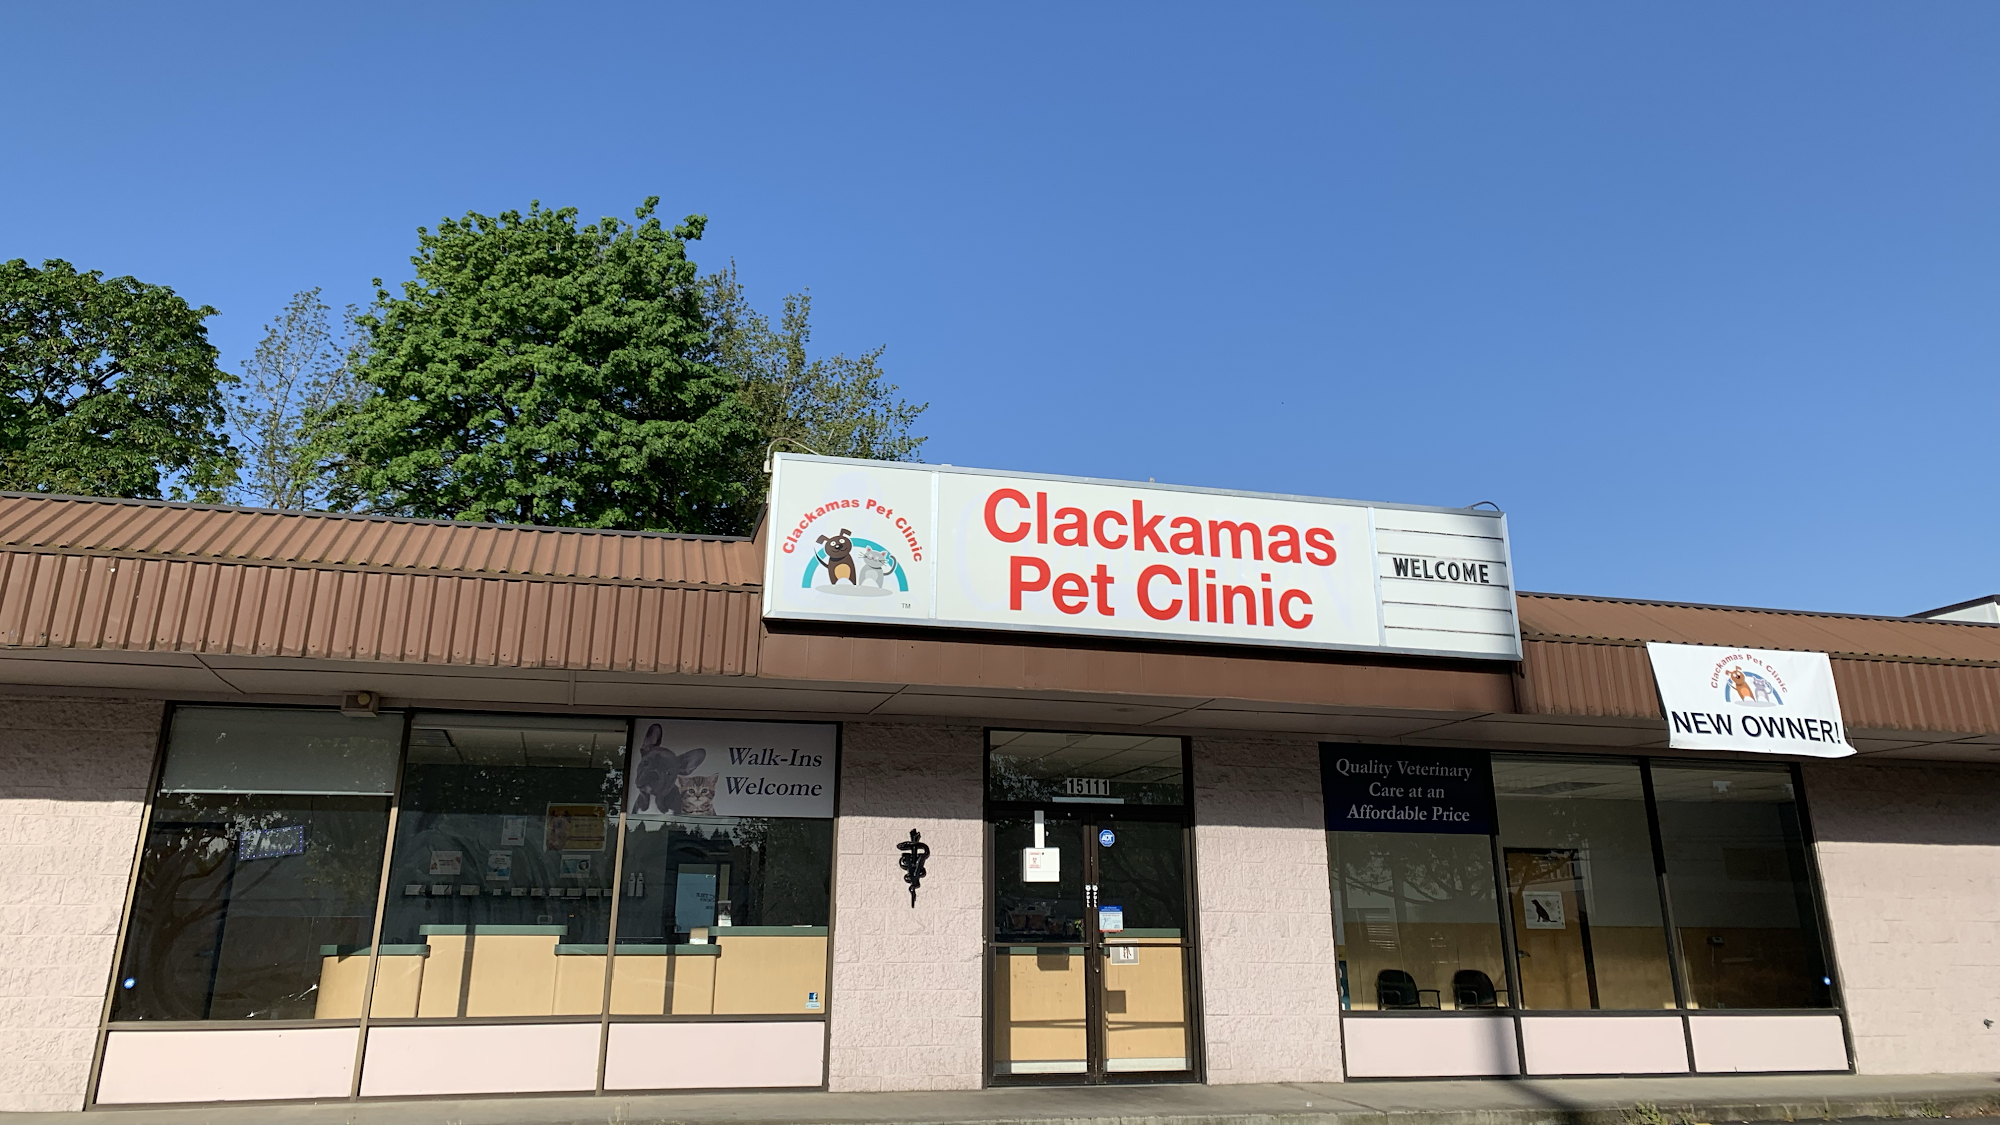 Clackamas Pet Clinic